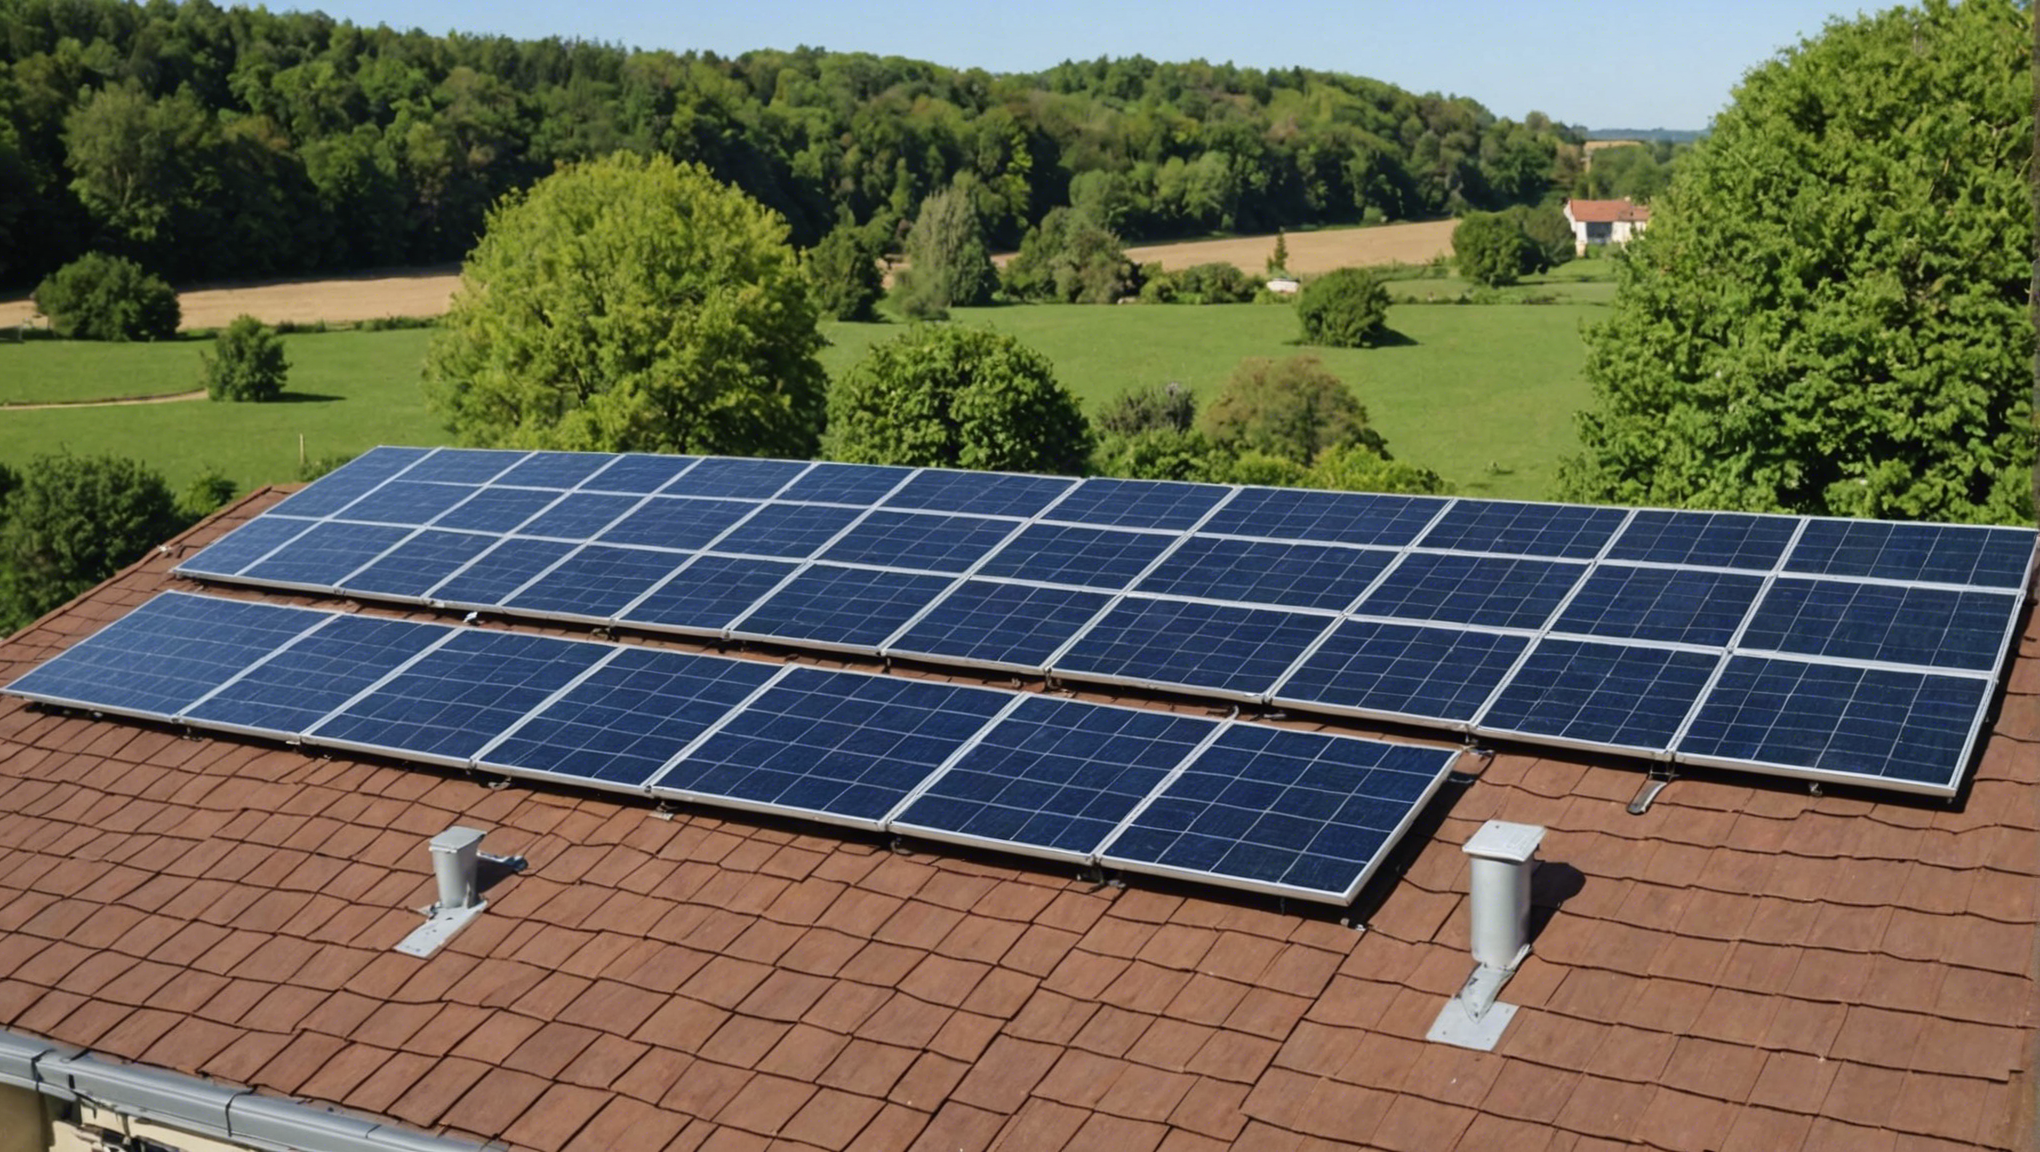 découvrez tout ce qu'il faut savoir sur l'installation de panneaux solaires et profitez des avantages de l'énergie solaire pour votre habitation ou votre entreprise.